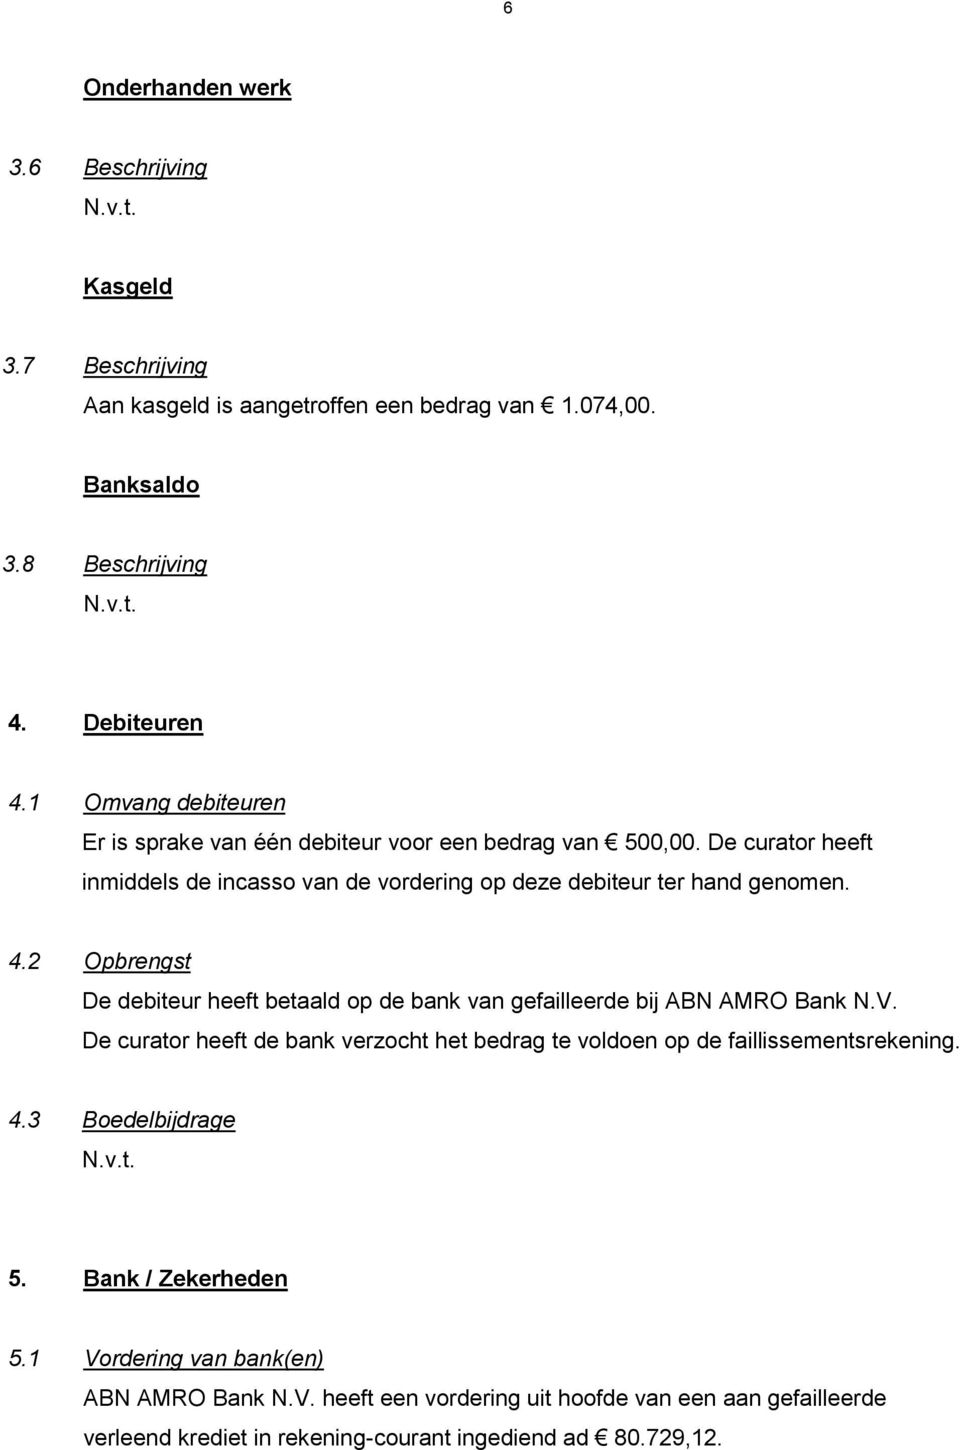 2 Opbrengst De debiteur heeft betaald op de bank van gefailleerde bij ABN AMRO Bank N.V. De curator heeft de bank verzocht het bedrag te voldoen op de faillissementsrekening. 4.